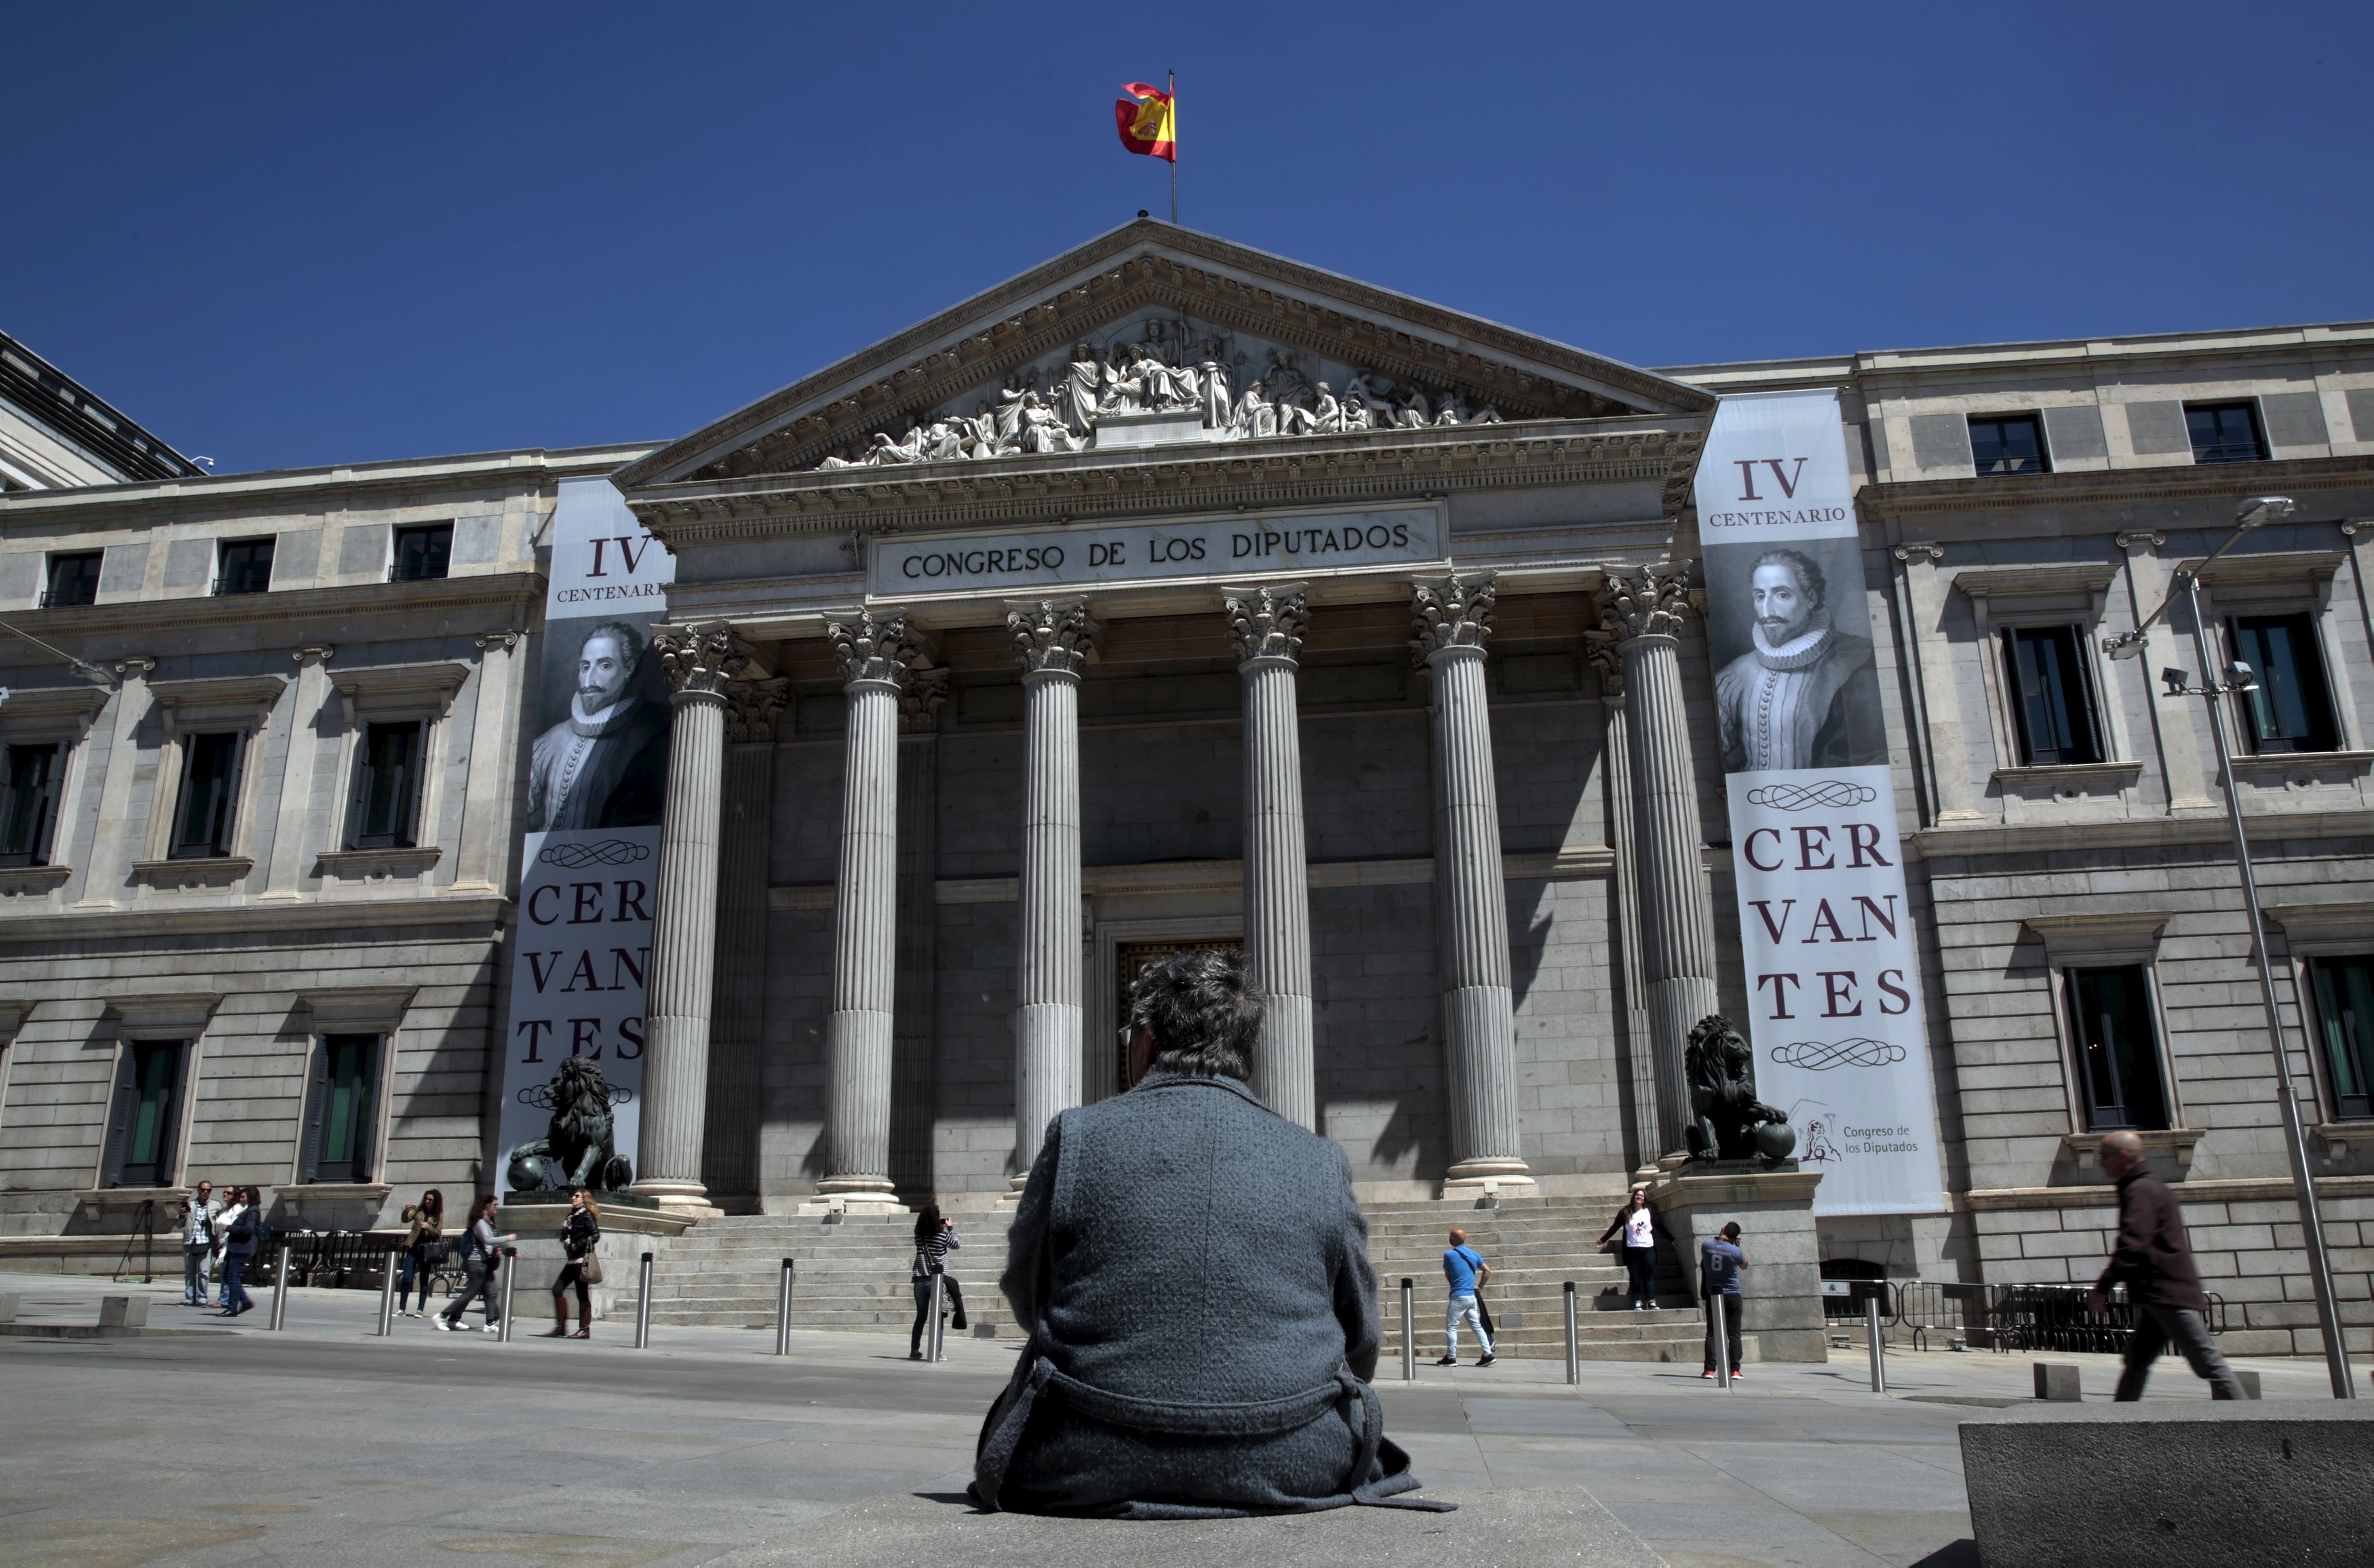 Ισπανία: Έσχατη απόπειρα σύγκλισης αντί για νέες κάλπες